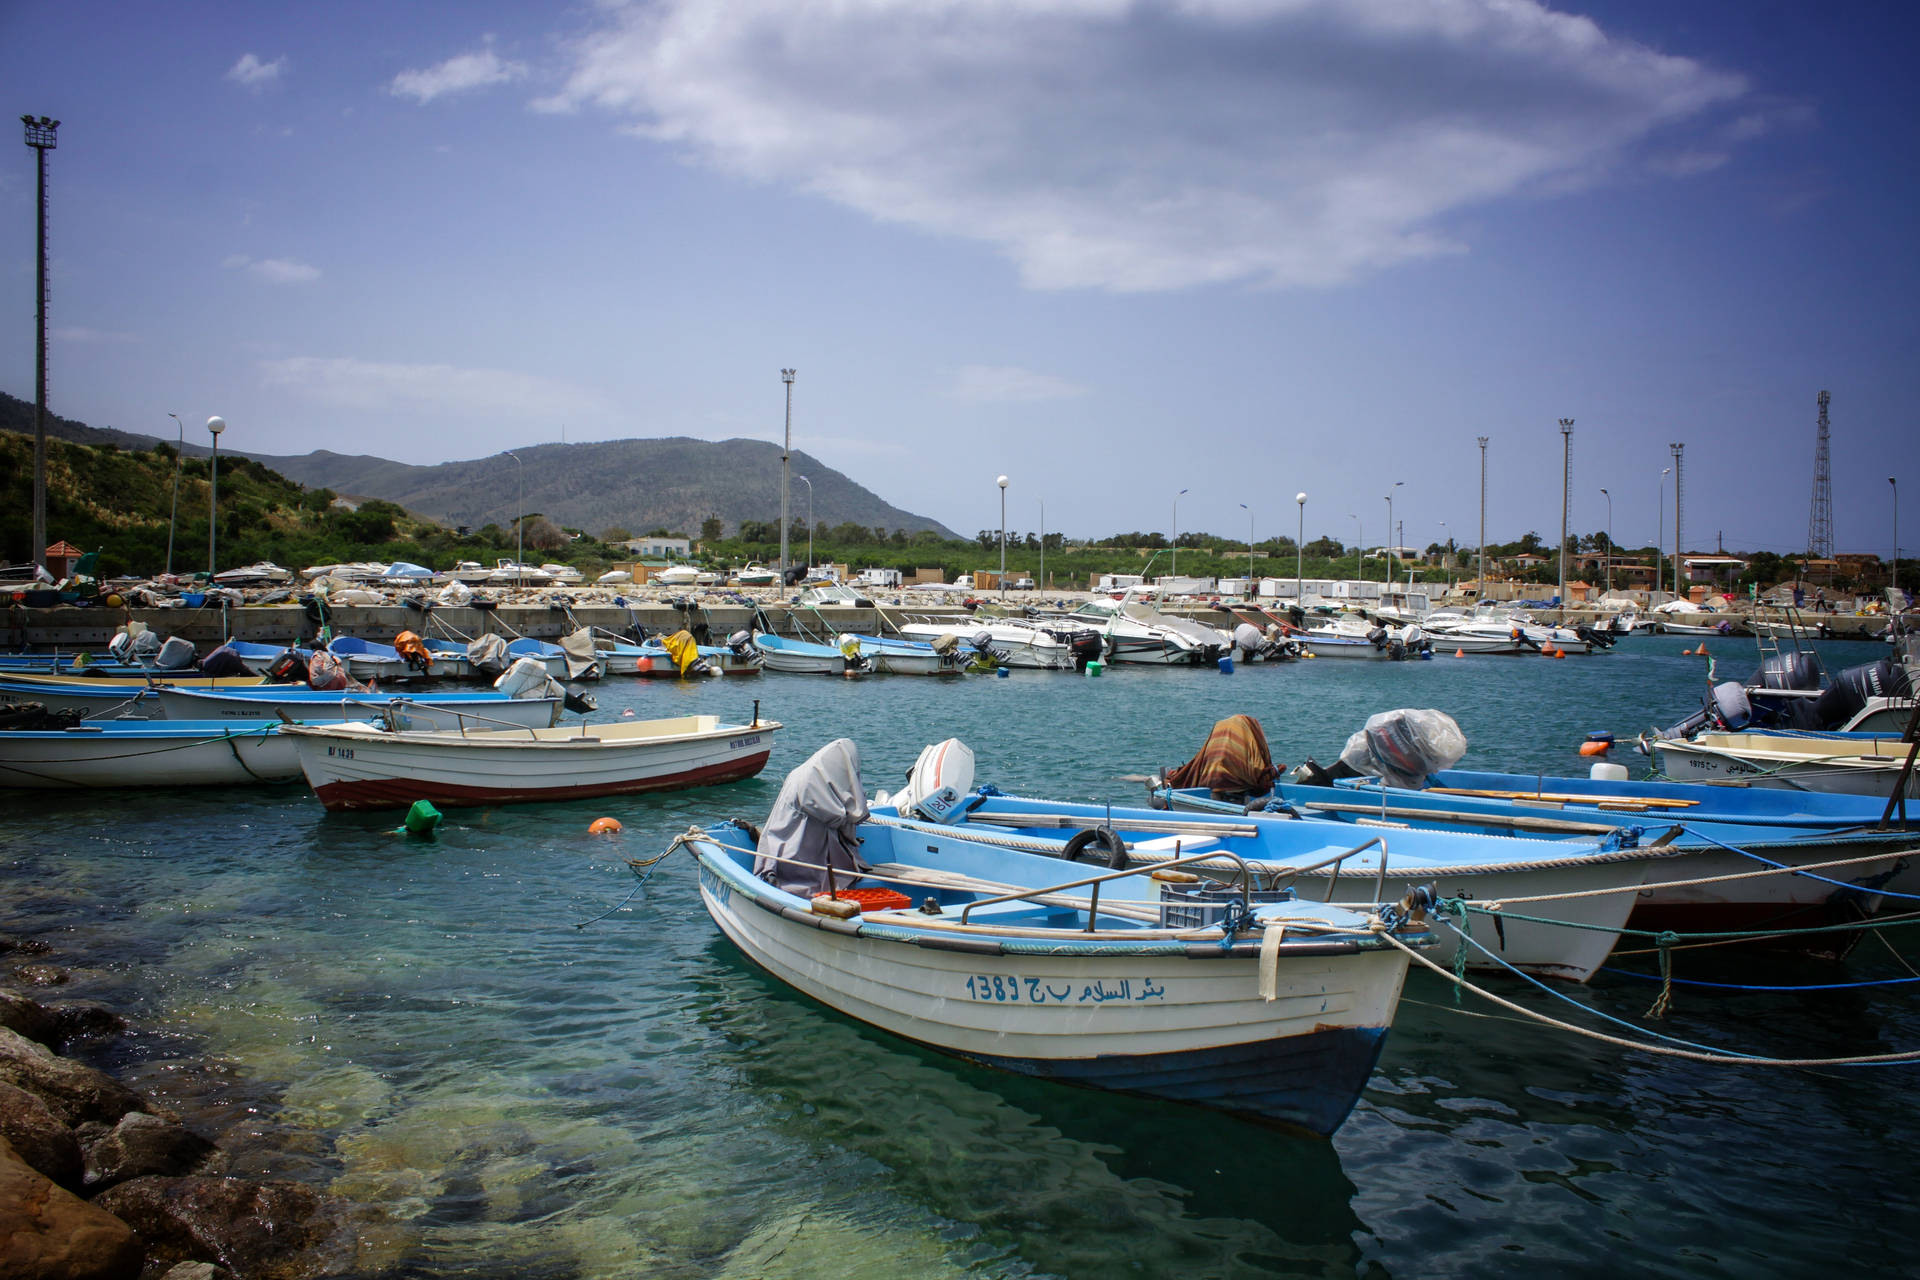 Algeria Dock With Boats